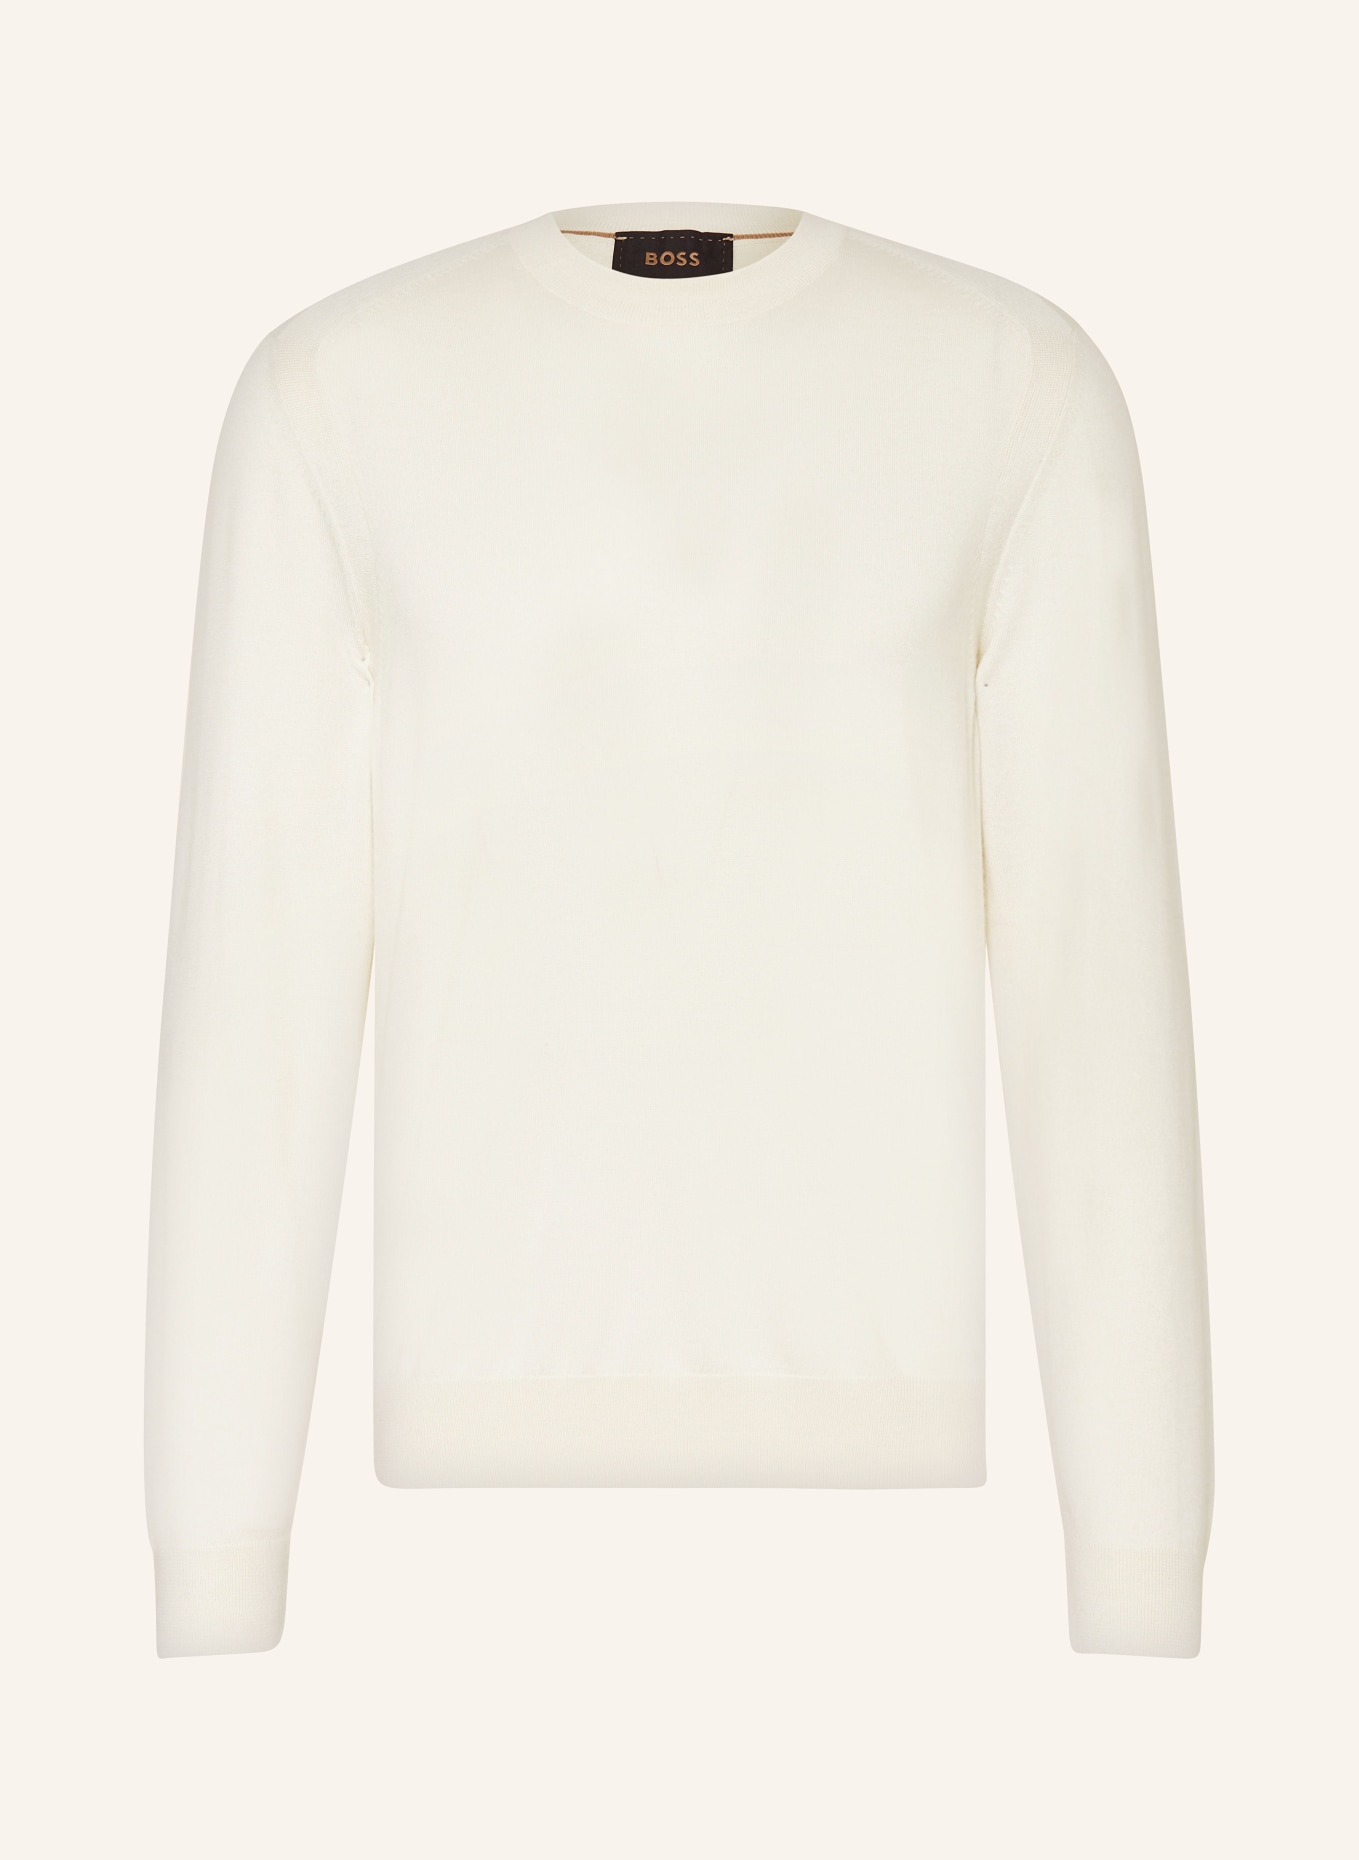 BOSS Sweter OVERO dodatkiem jedwabiu i kaszmiru, Kolor: KREMOWY (Obrazek 1)